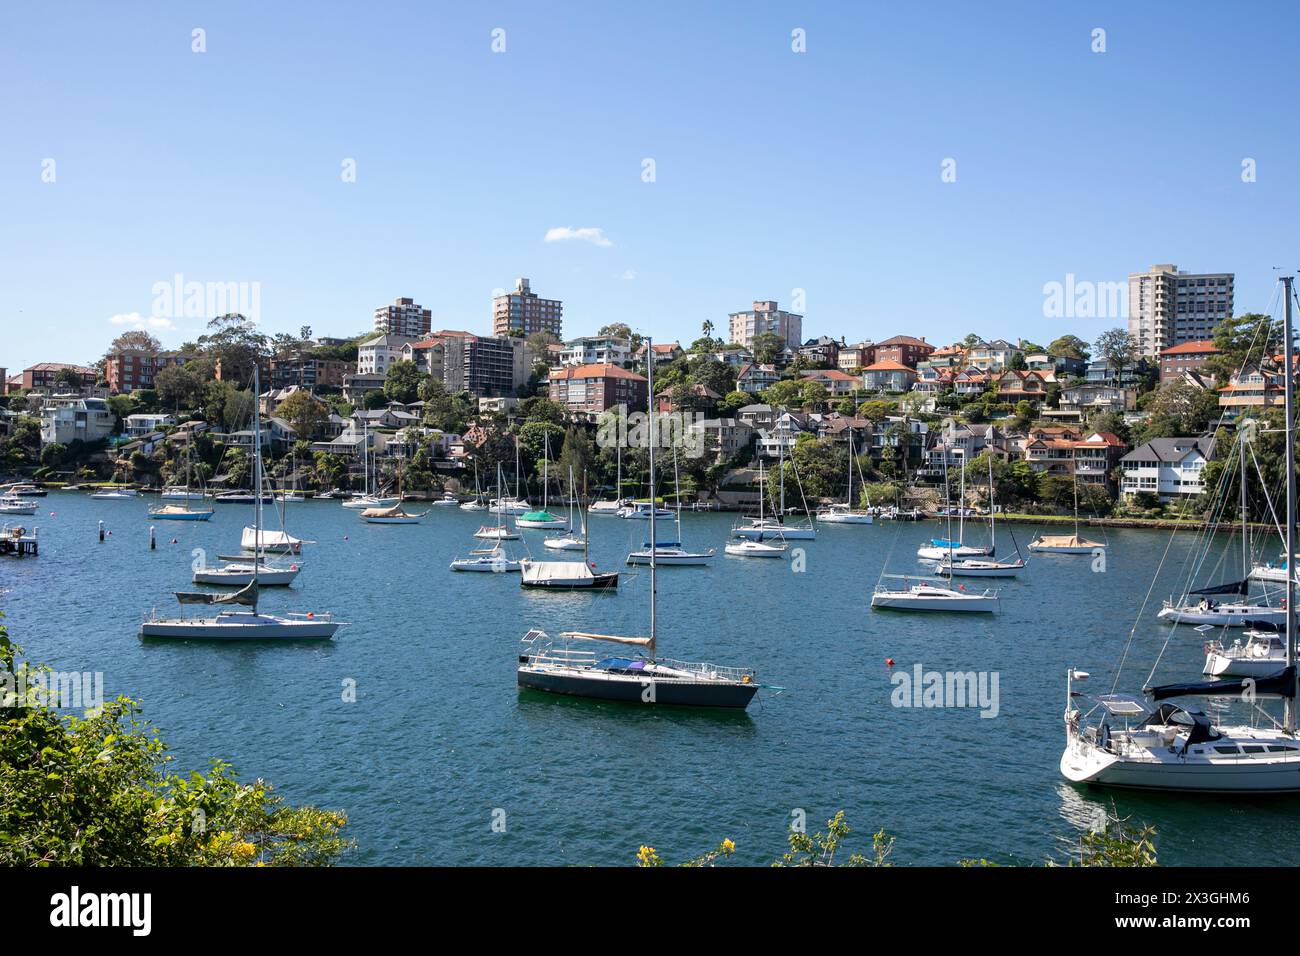 Mosman Bay sur la rive nord inférieure de Sydney, baie portuaire avec des bateaux et yachts amarrés dans la baie, Sydney, Nouvelle-Galles du Sud, Australie Banque D'Images